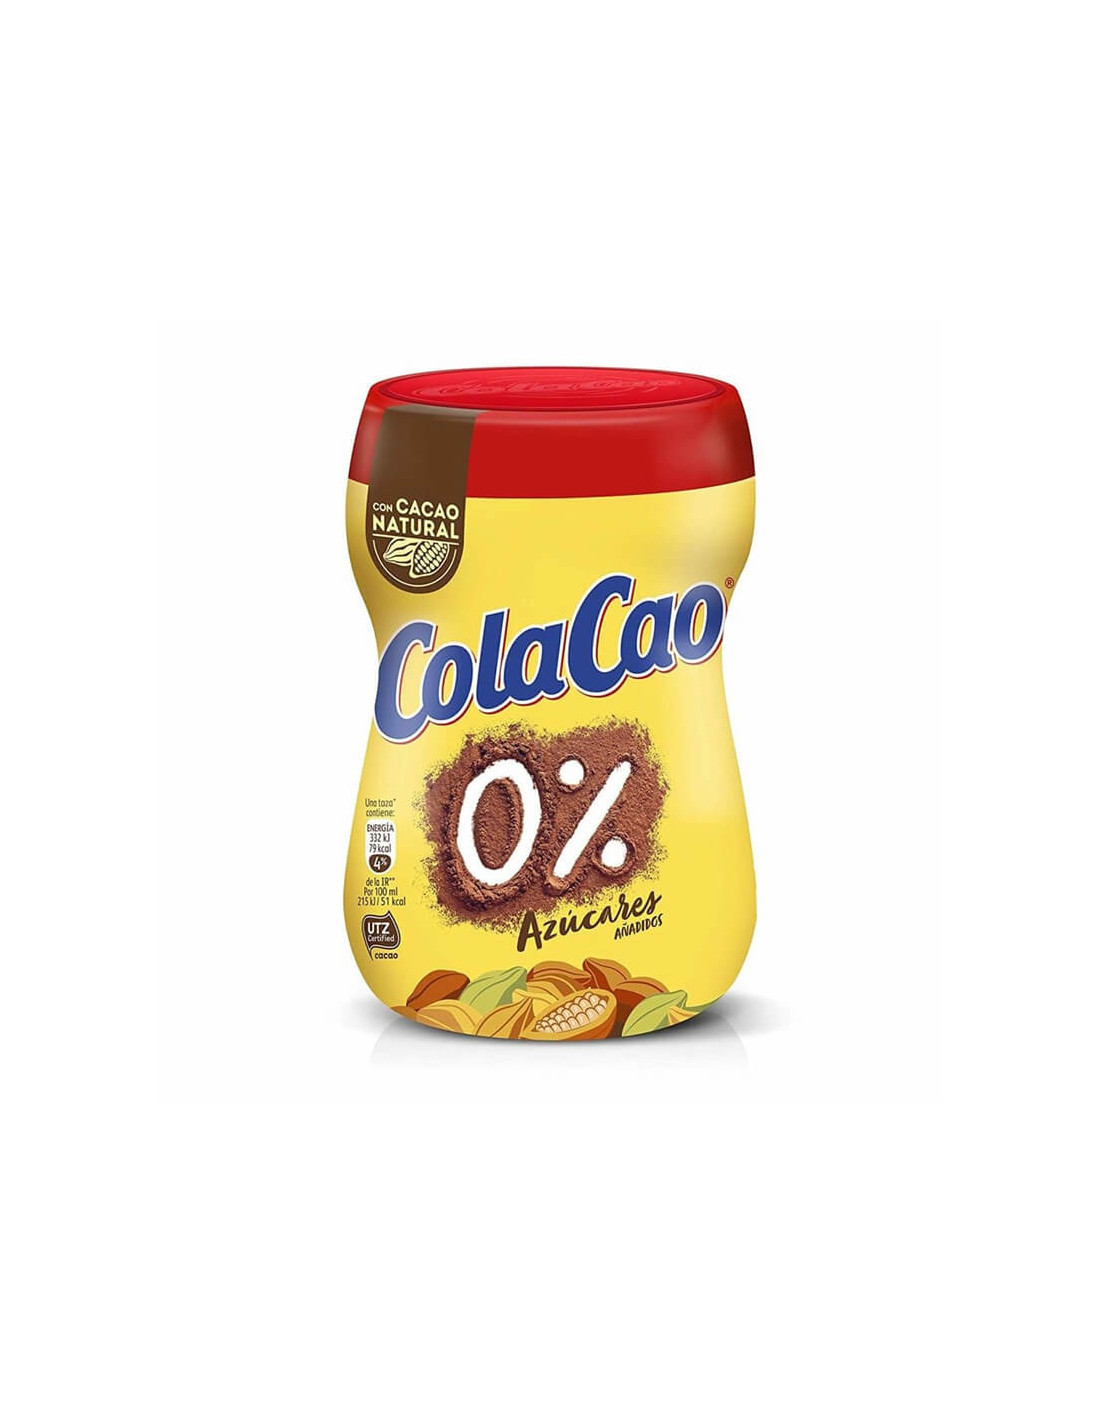 Mejores Compras Online España - 📌 SUPER CHOLLO⚡⚡PACK 2 UNIDADES💣 *Cola Cao  0% Azúcares Añadidos - 500 g.Total:1kg. AL COMPRAR 2 UNIDADES,DESCUENTO 50%  EN LA SEGUNDA UNIDAD. 🔥OFERTA DESTACADA PACK 2 UNIDADES🔥Se